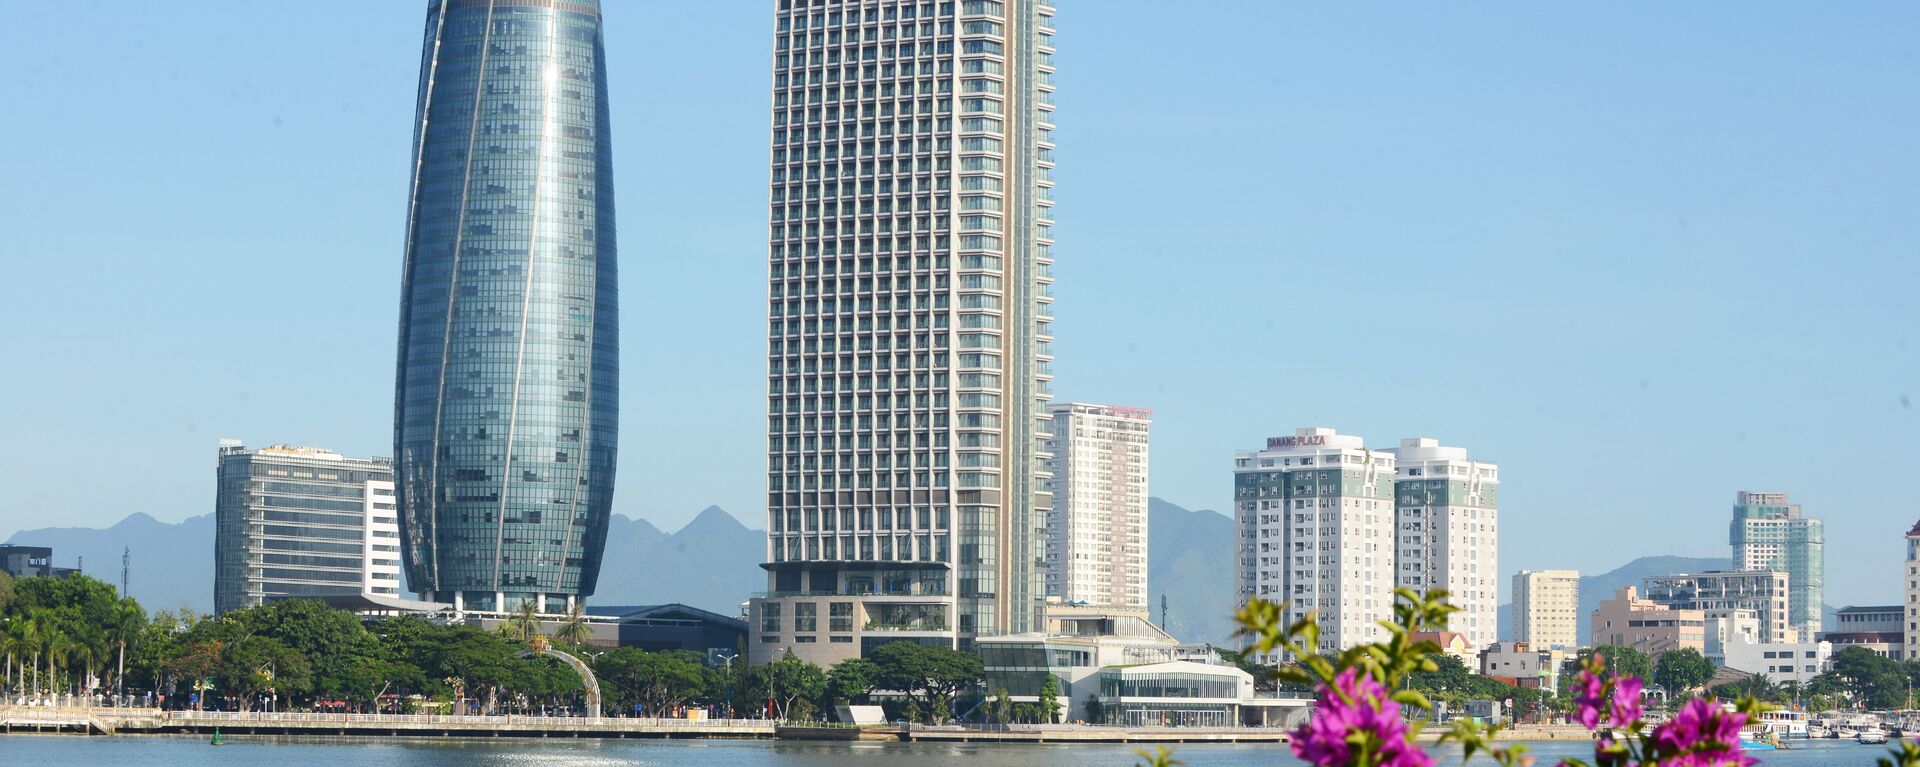 Sông Hàn và tòa nhà Trung tâm hành chính với lối kiến trúc hình tháp trụ tròn cao 175,5m là hai biểu tượng đăng trưng của Đà Nẵng, thành phố đăng cai Tuần lễ Cấp cao APEC 2017. - Sputnik Việt Nam, 1920, 16.12.2022